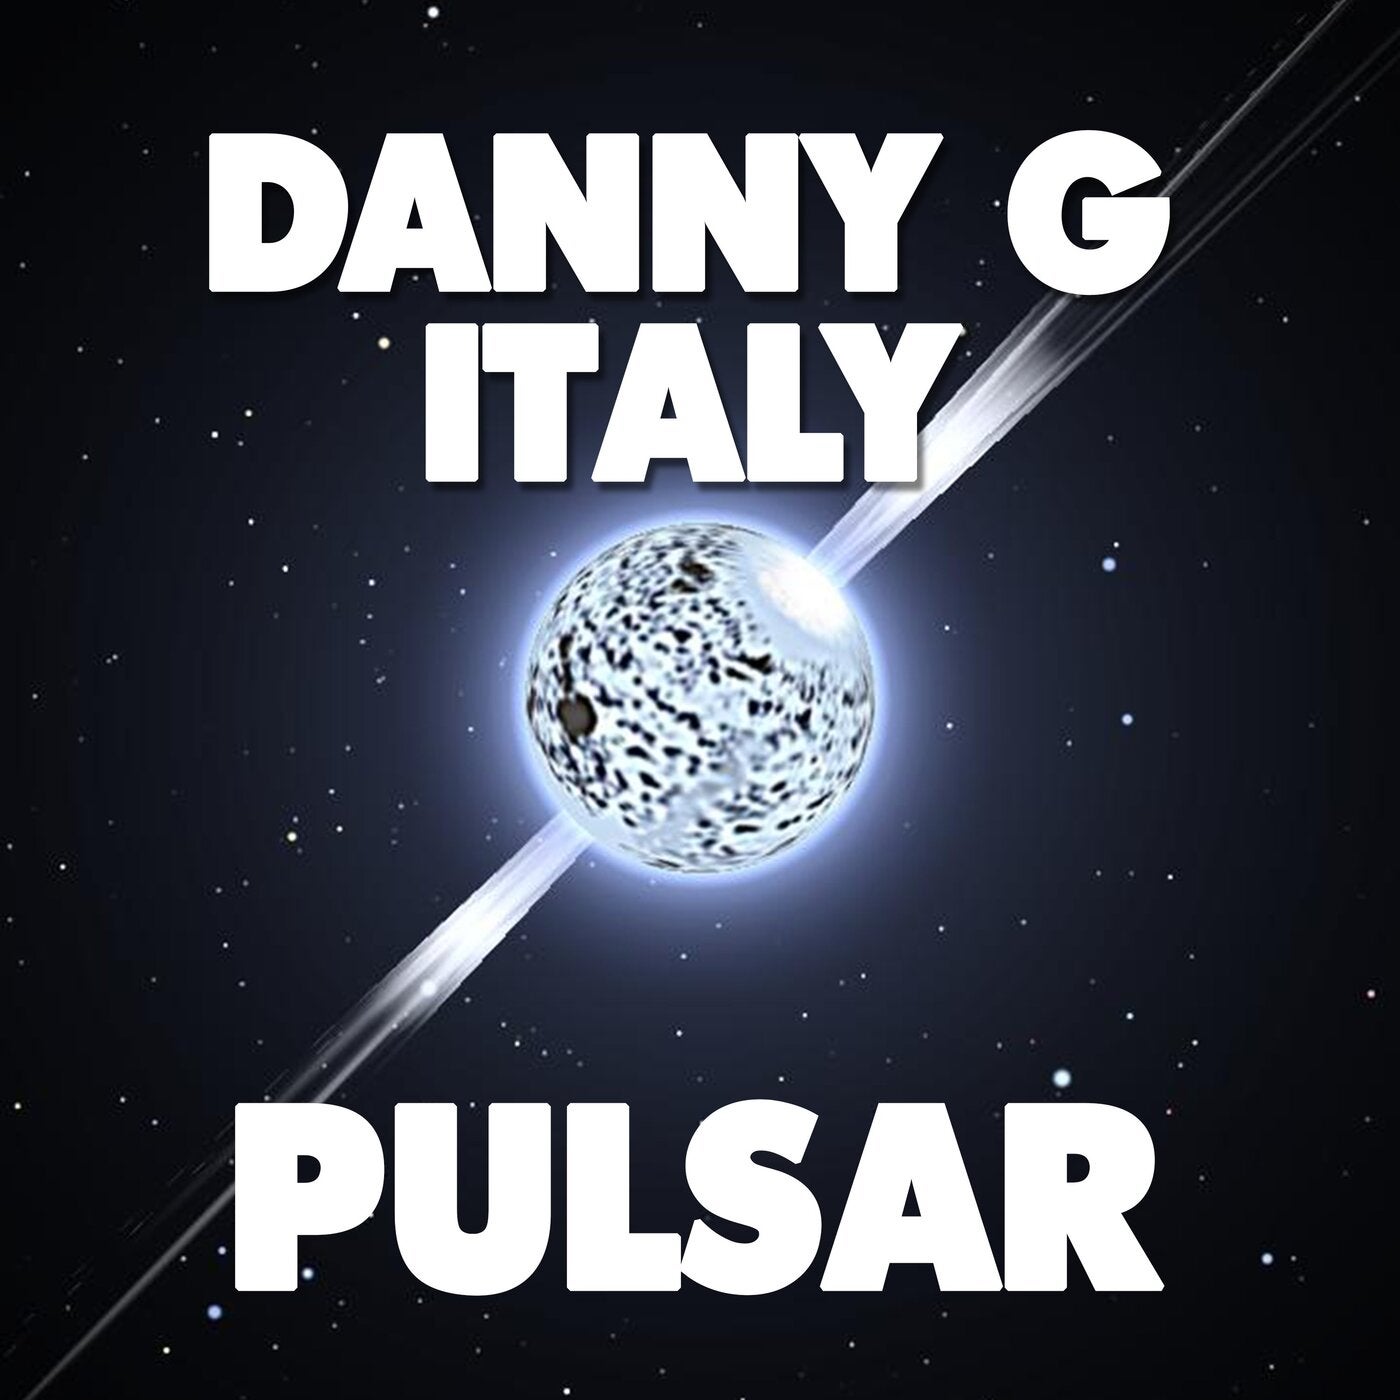 Danny G Italy - Pulsar (Original Mix)